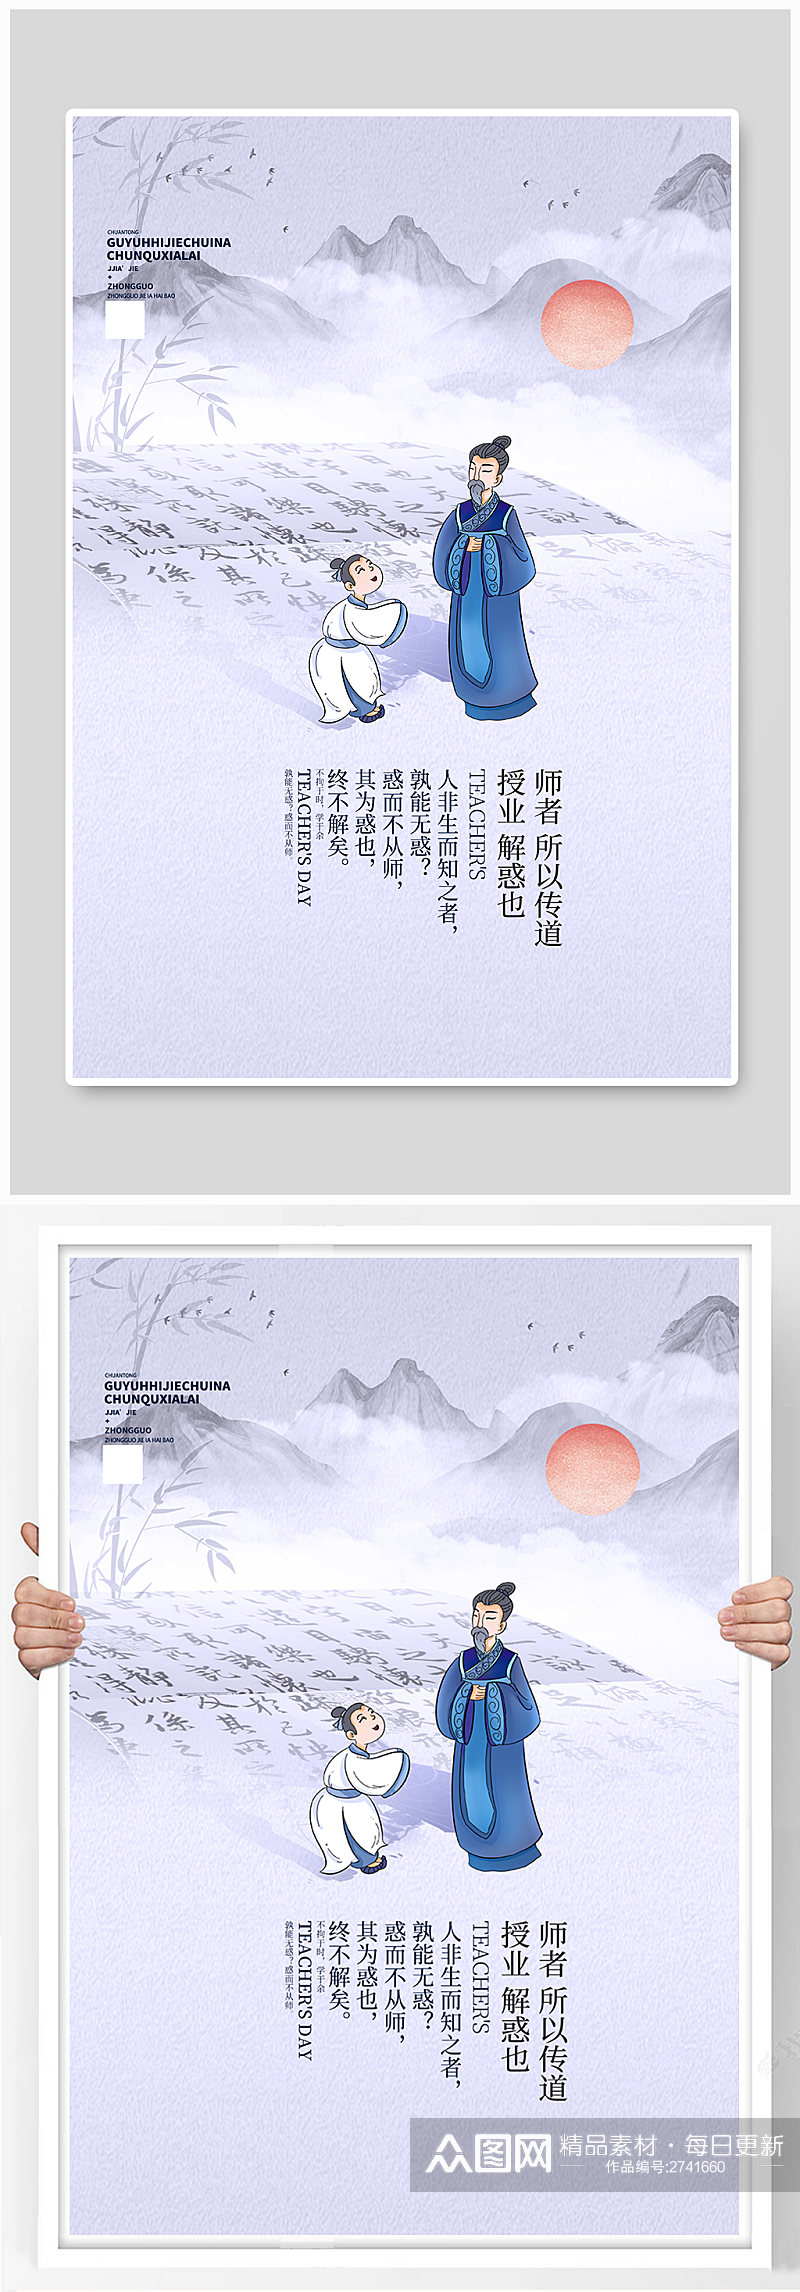 教师节中国风水墨风创意海报素材